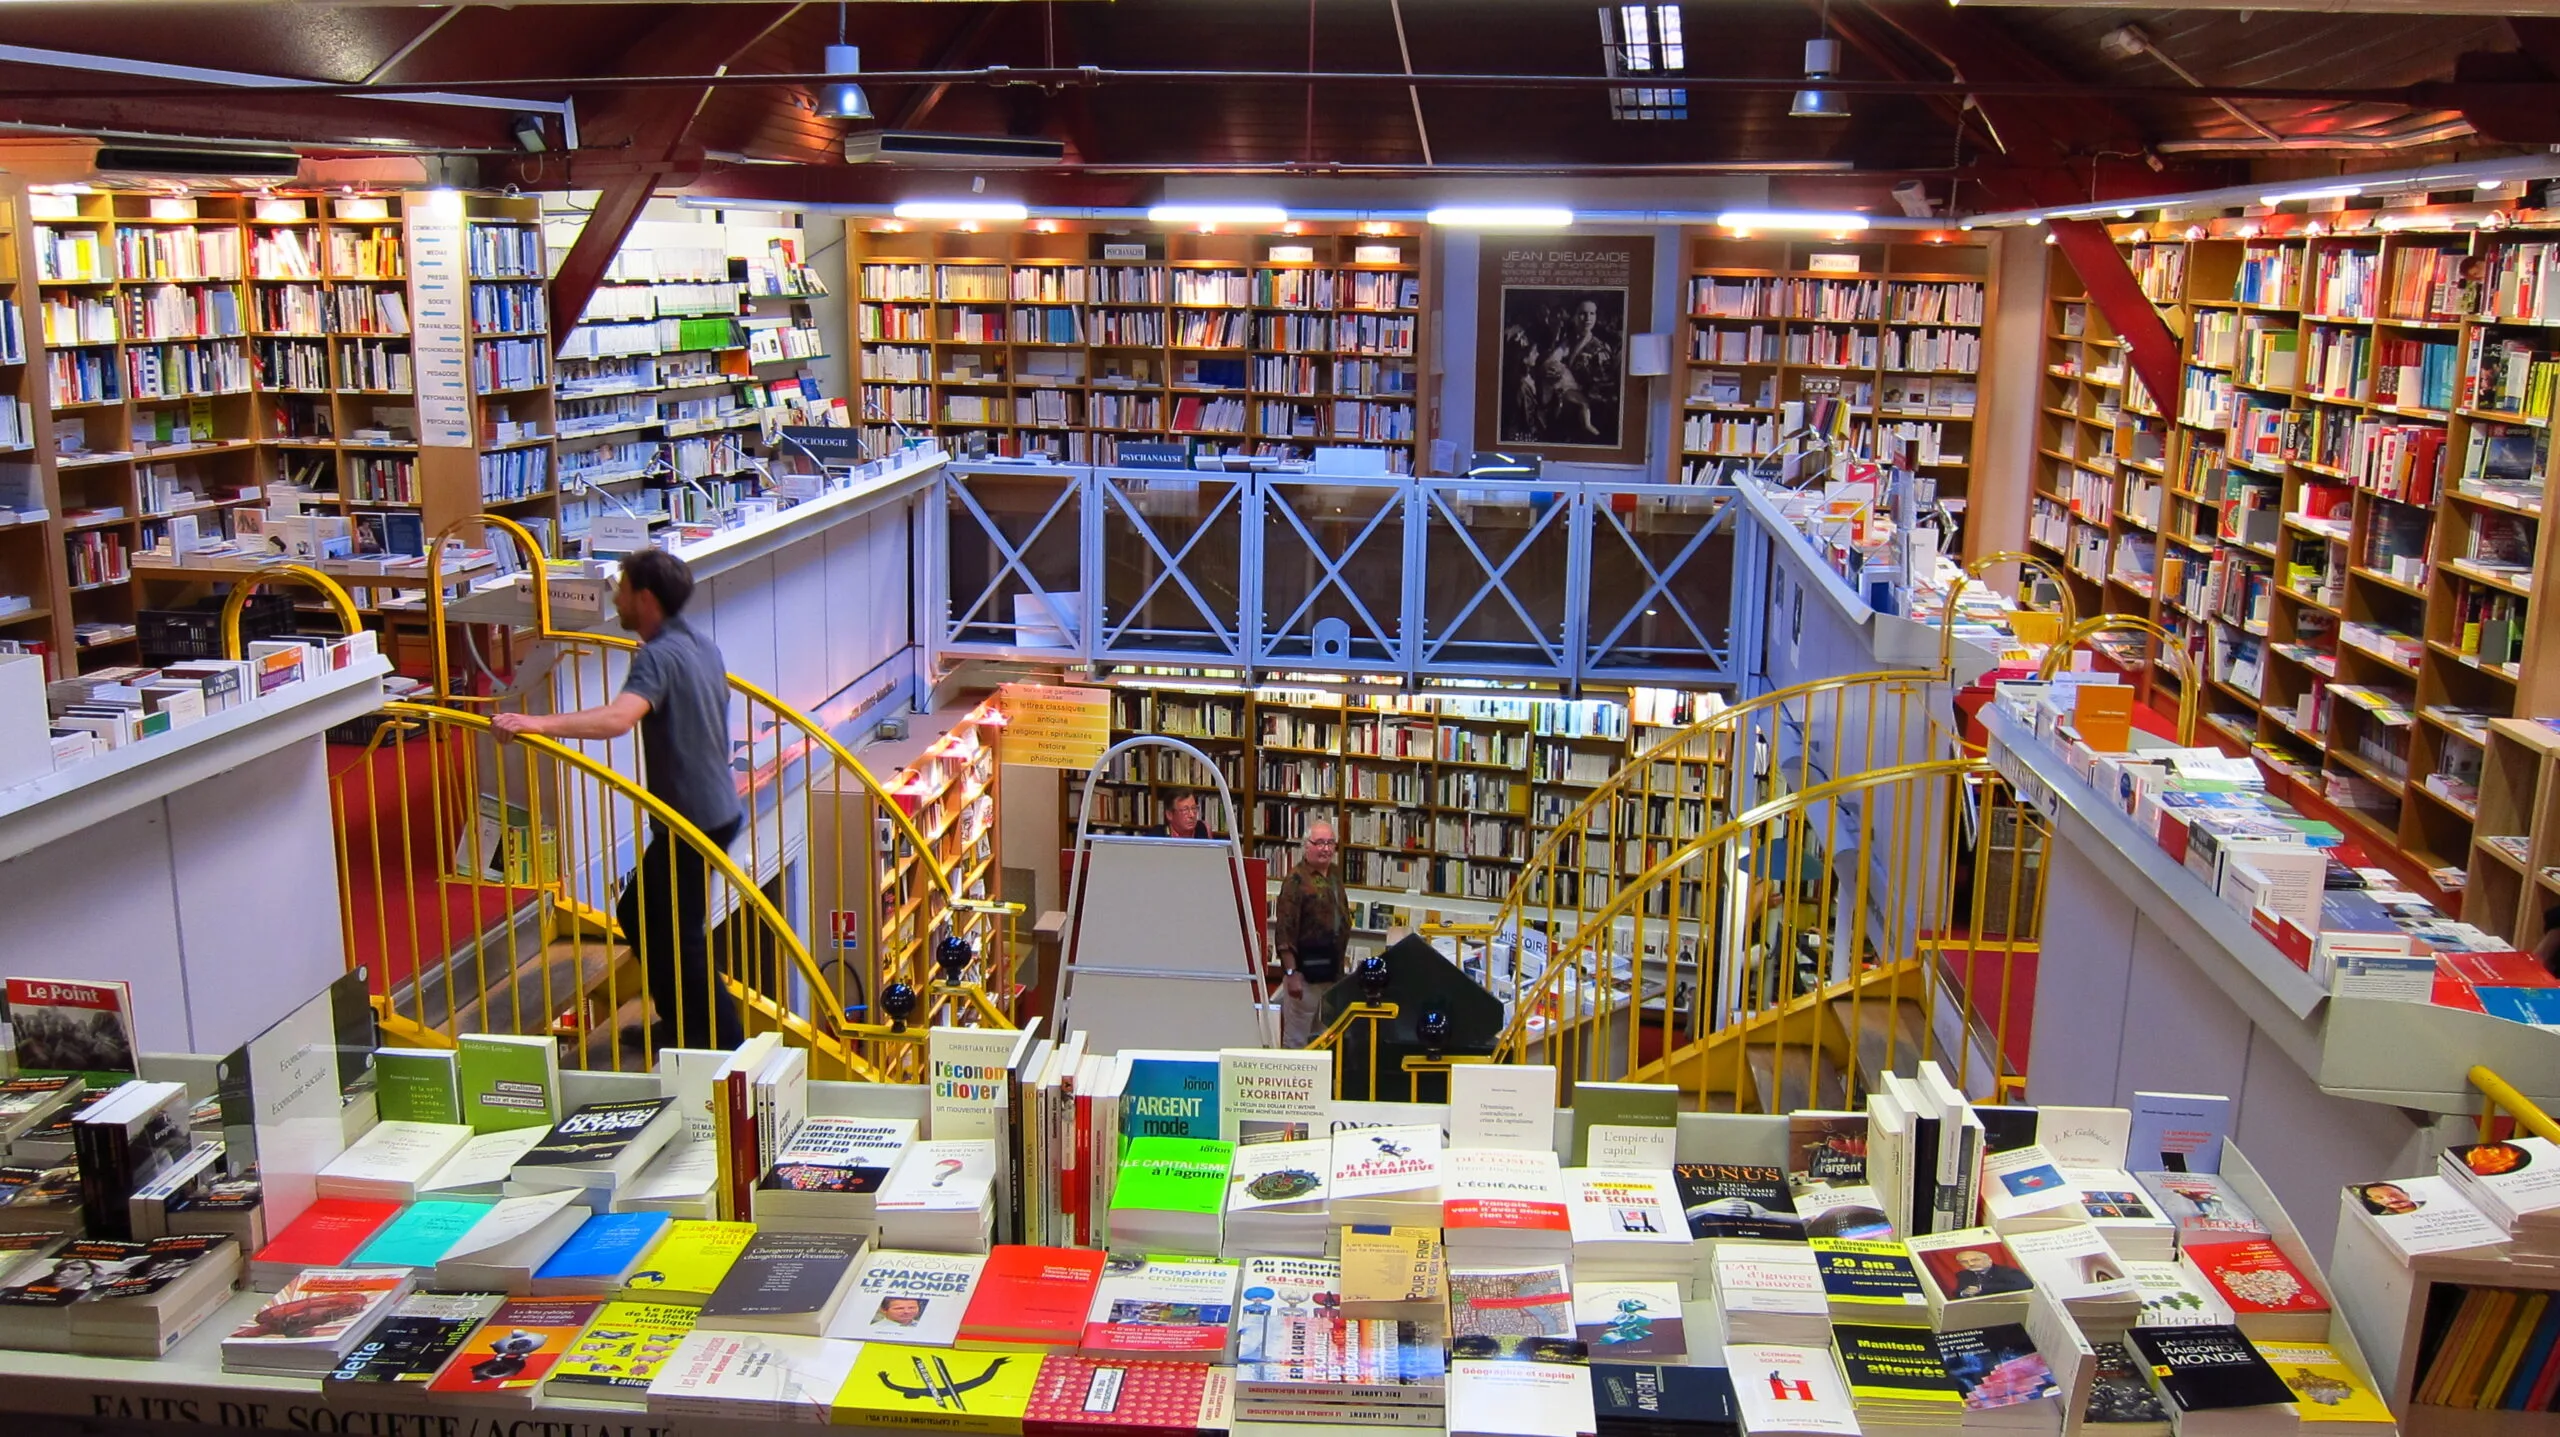 “Les employé.e.s des librairies sont fatiguées par un travail physique épuisant et ne veulent pas être exposées inutilement au virus”